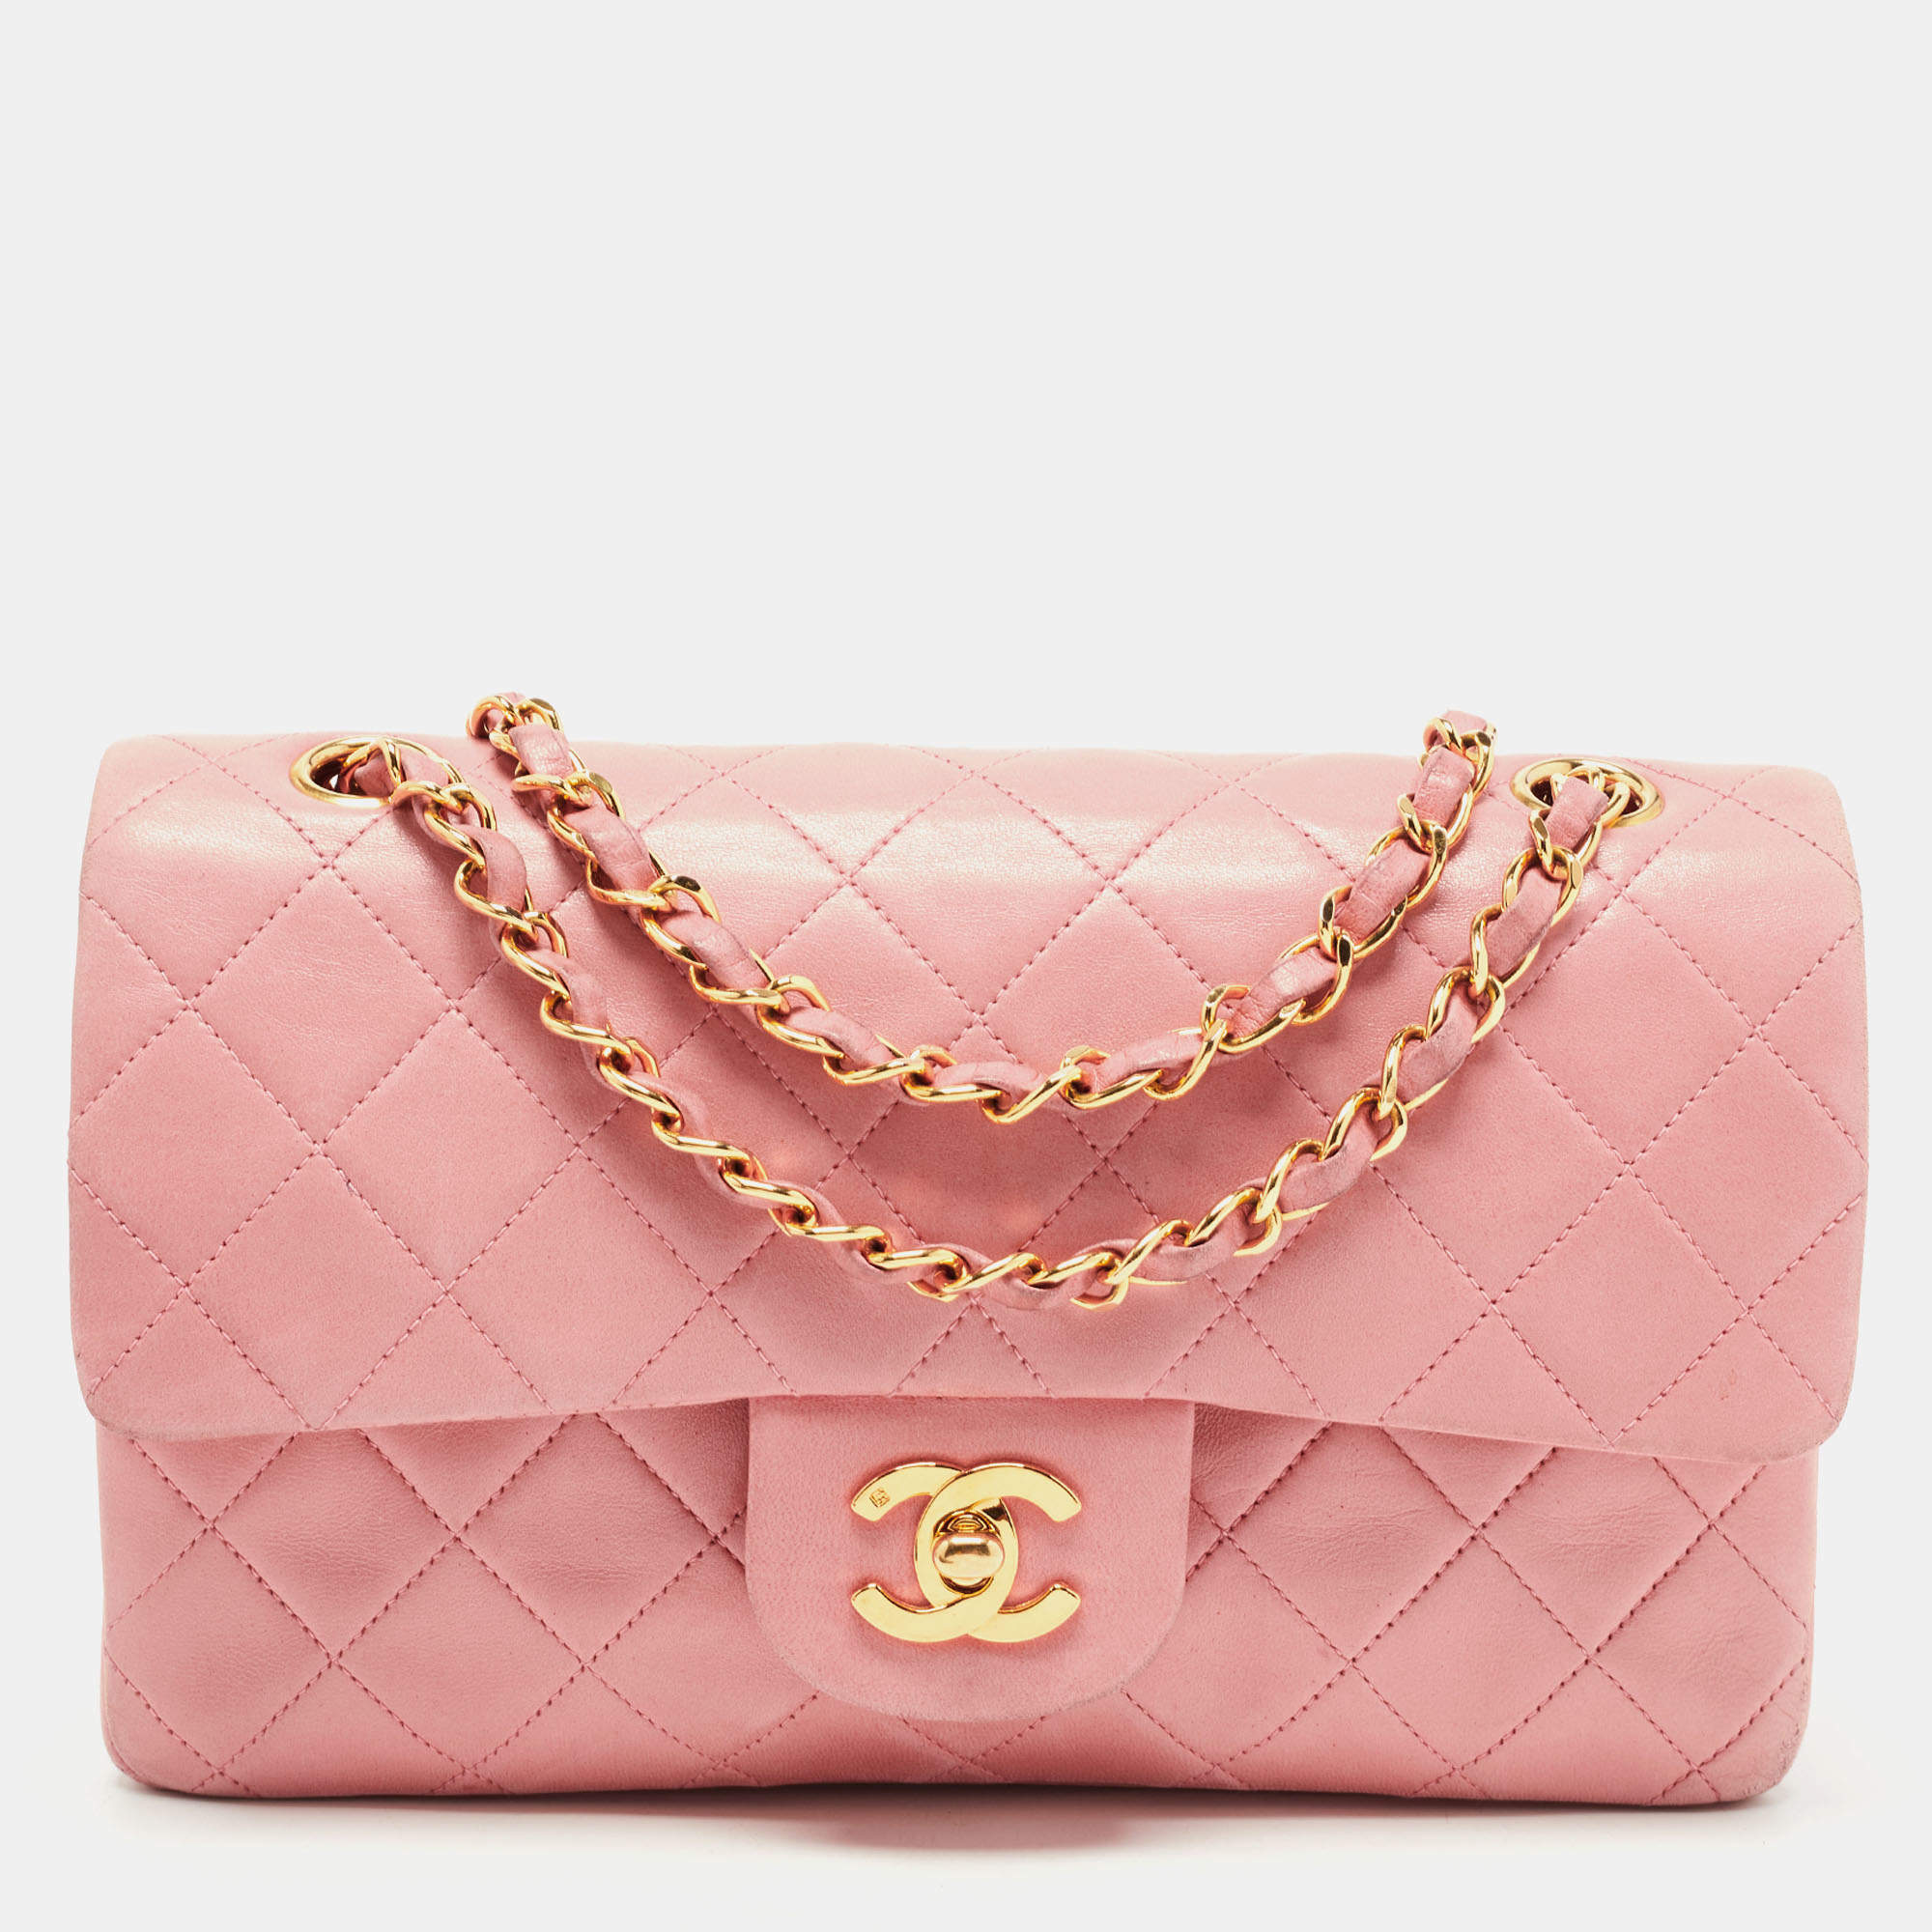 soft pink chanel bag